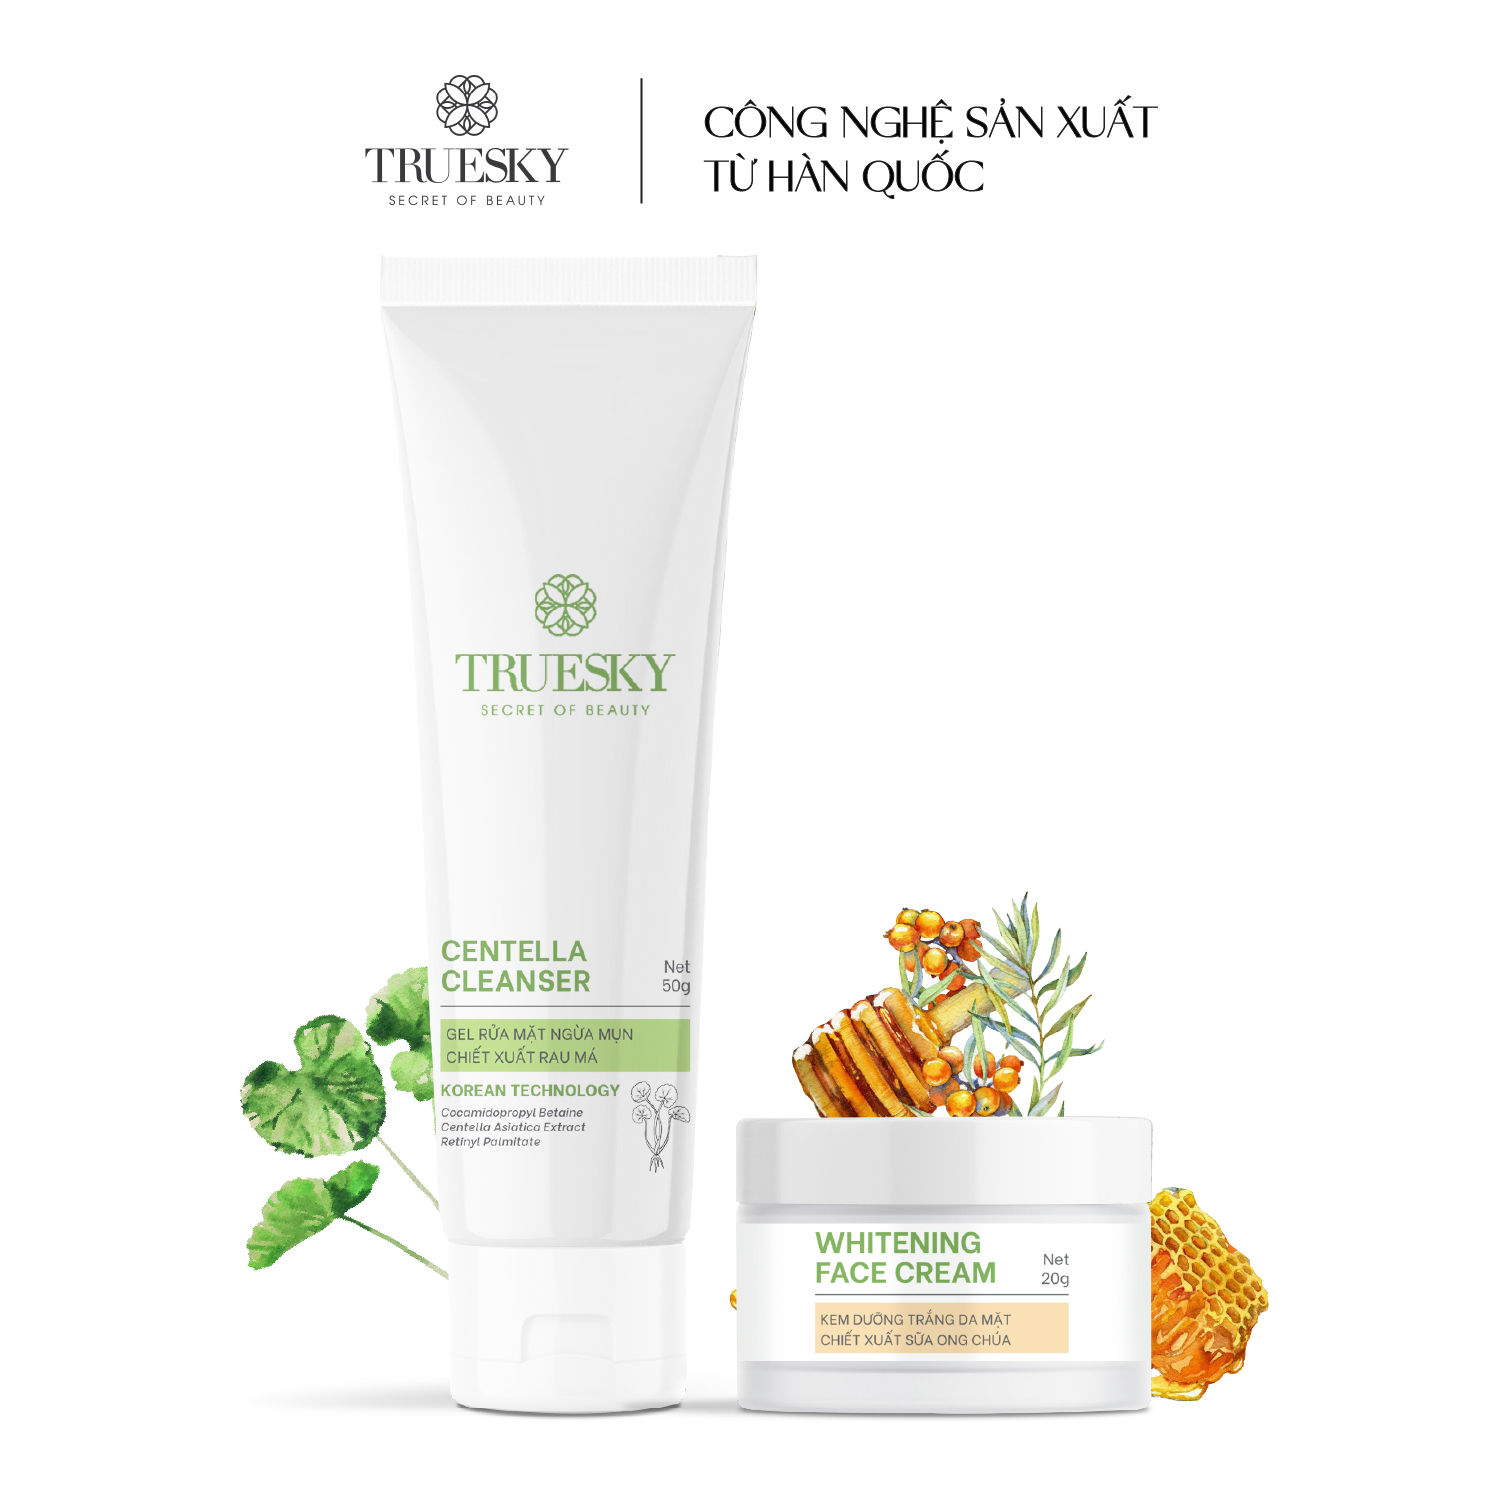 Bộ làm trắng và ngăn ngừa mụn da mặt Truesky gồm 1 kem dưỡng trắng da mặt 20g + 1 gel rửa mặt rau má 50g